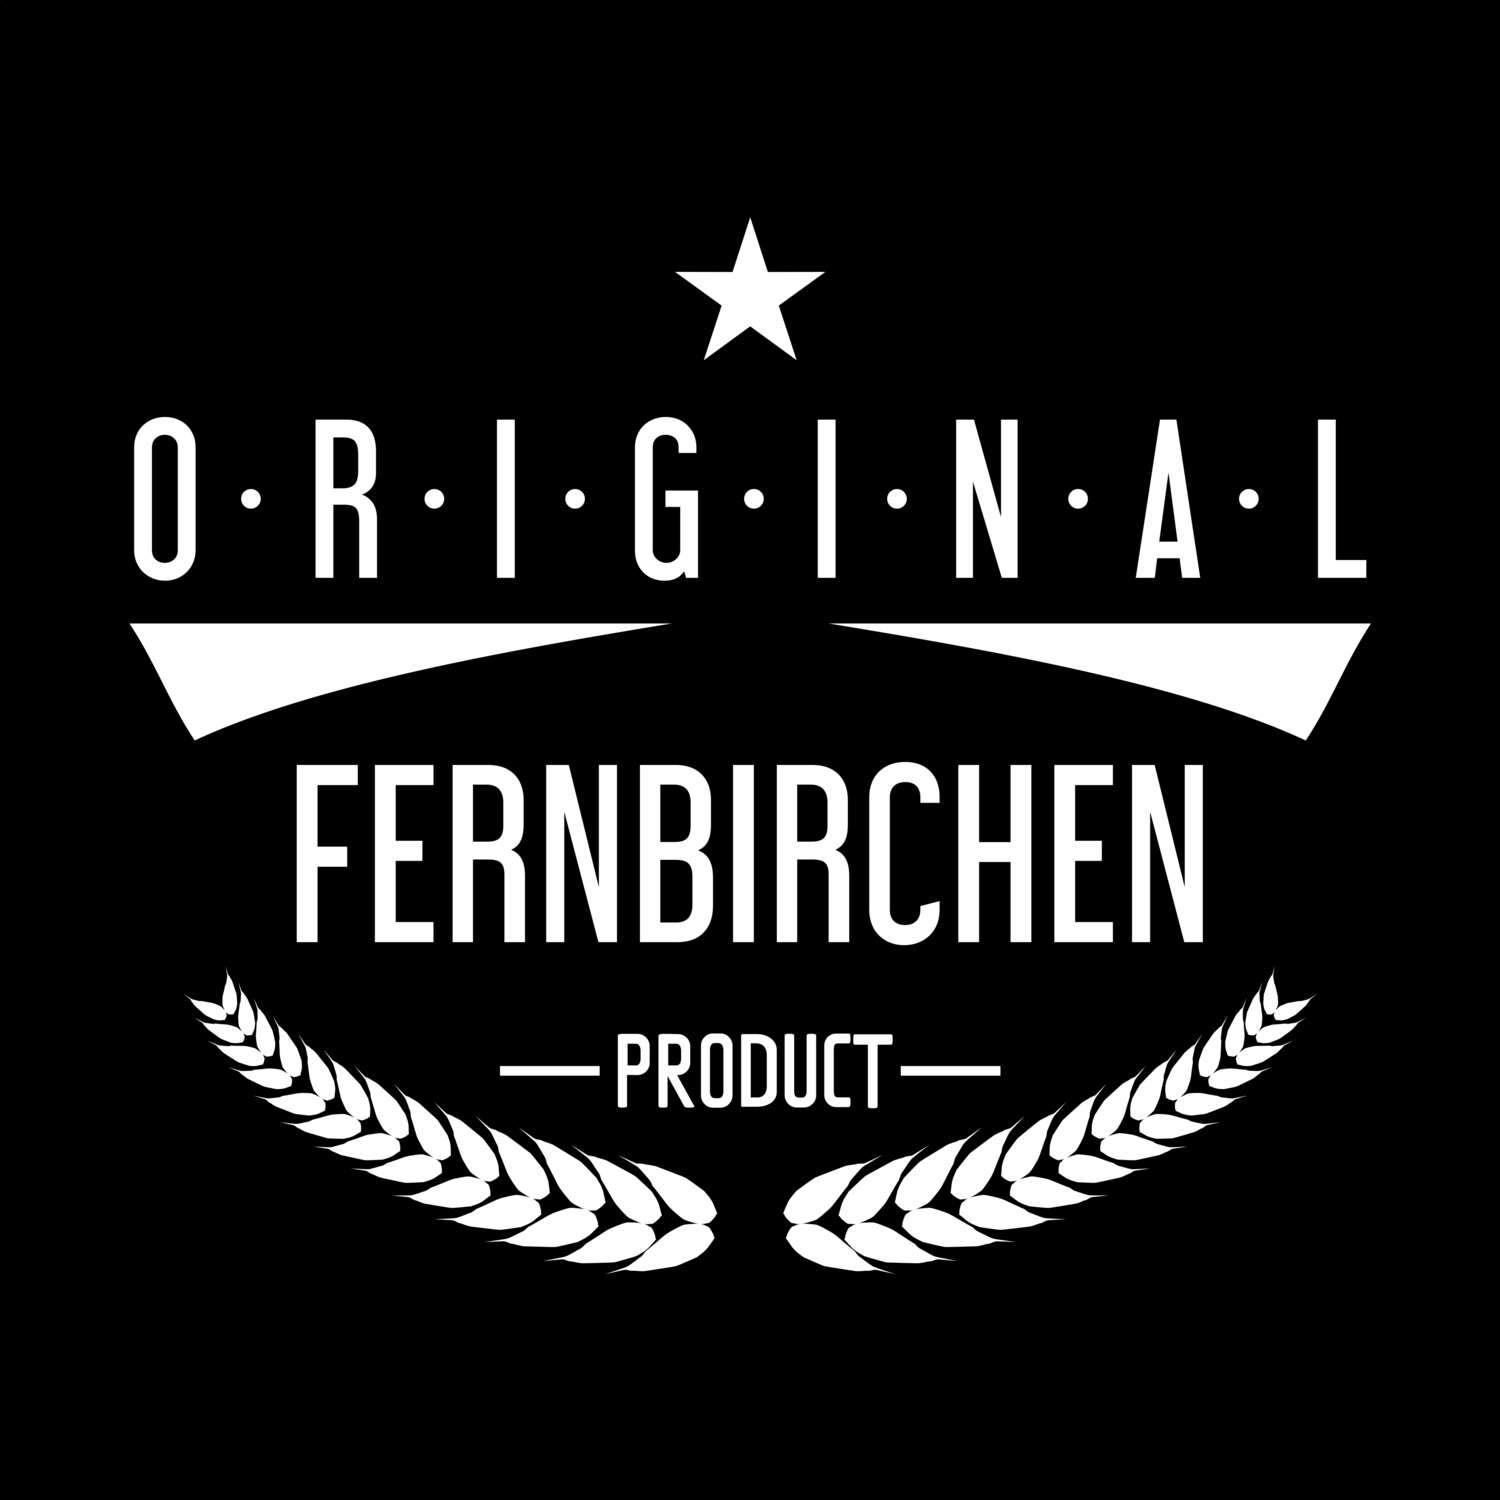 Fernbirchen T-Shirt »Original Product«